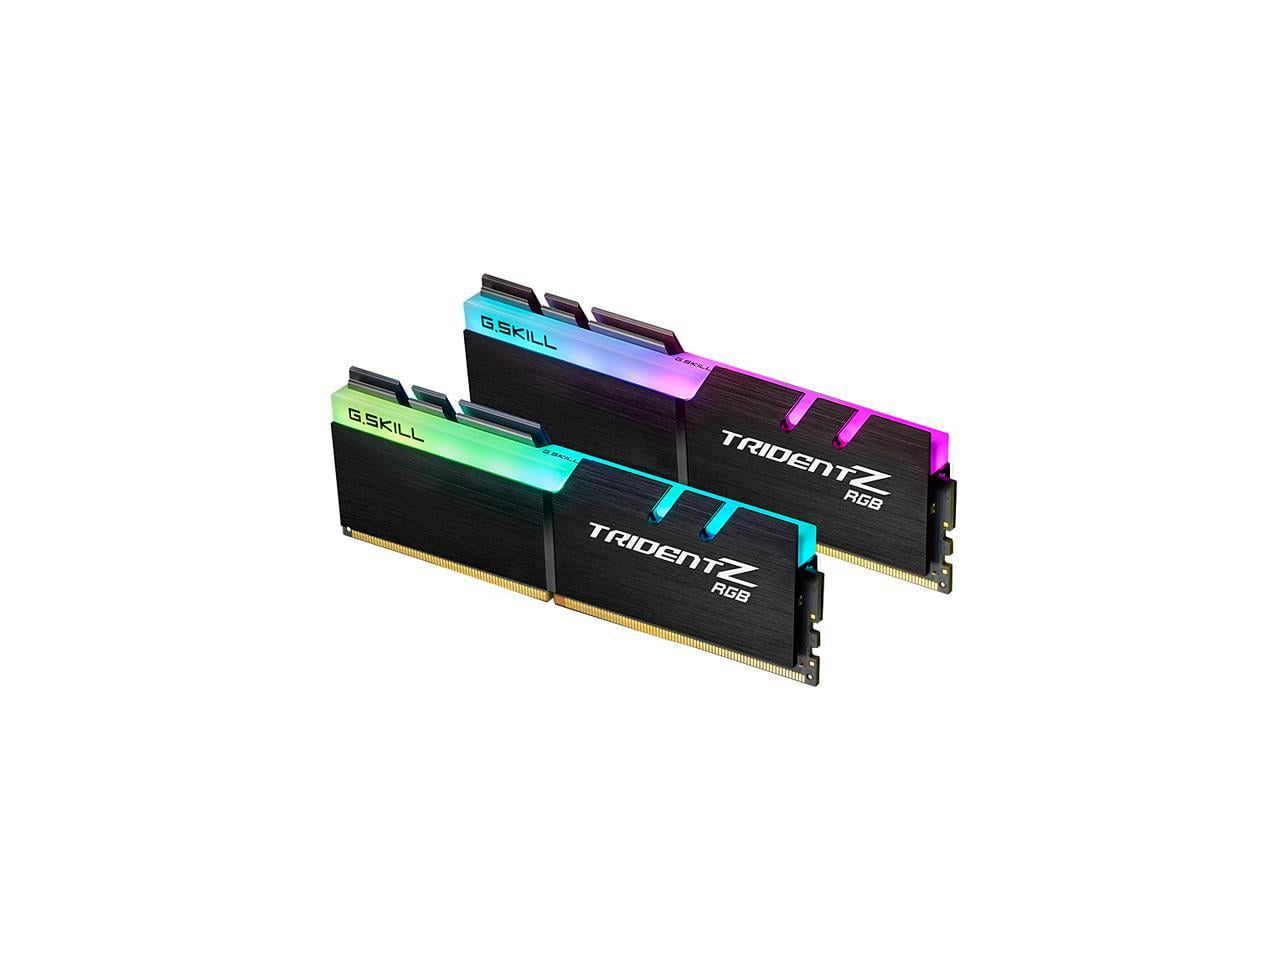 G.SKILL TridentZ RGB Series 16GB (2 x 8GB) 288-Pin PC RAM DDR4 3200 (PC4  25600) Desktop Memory Model F4-3200C16D-16GTZR